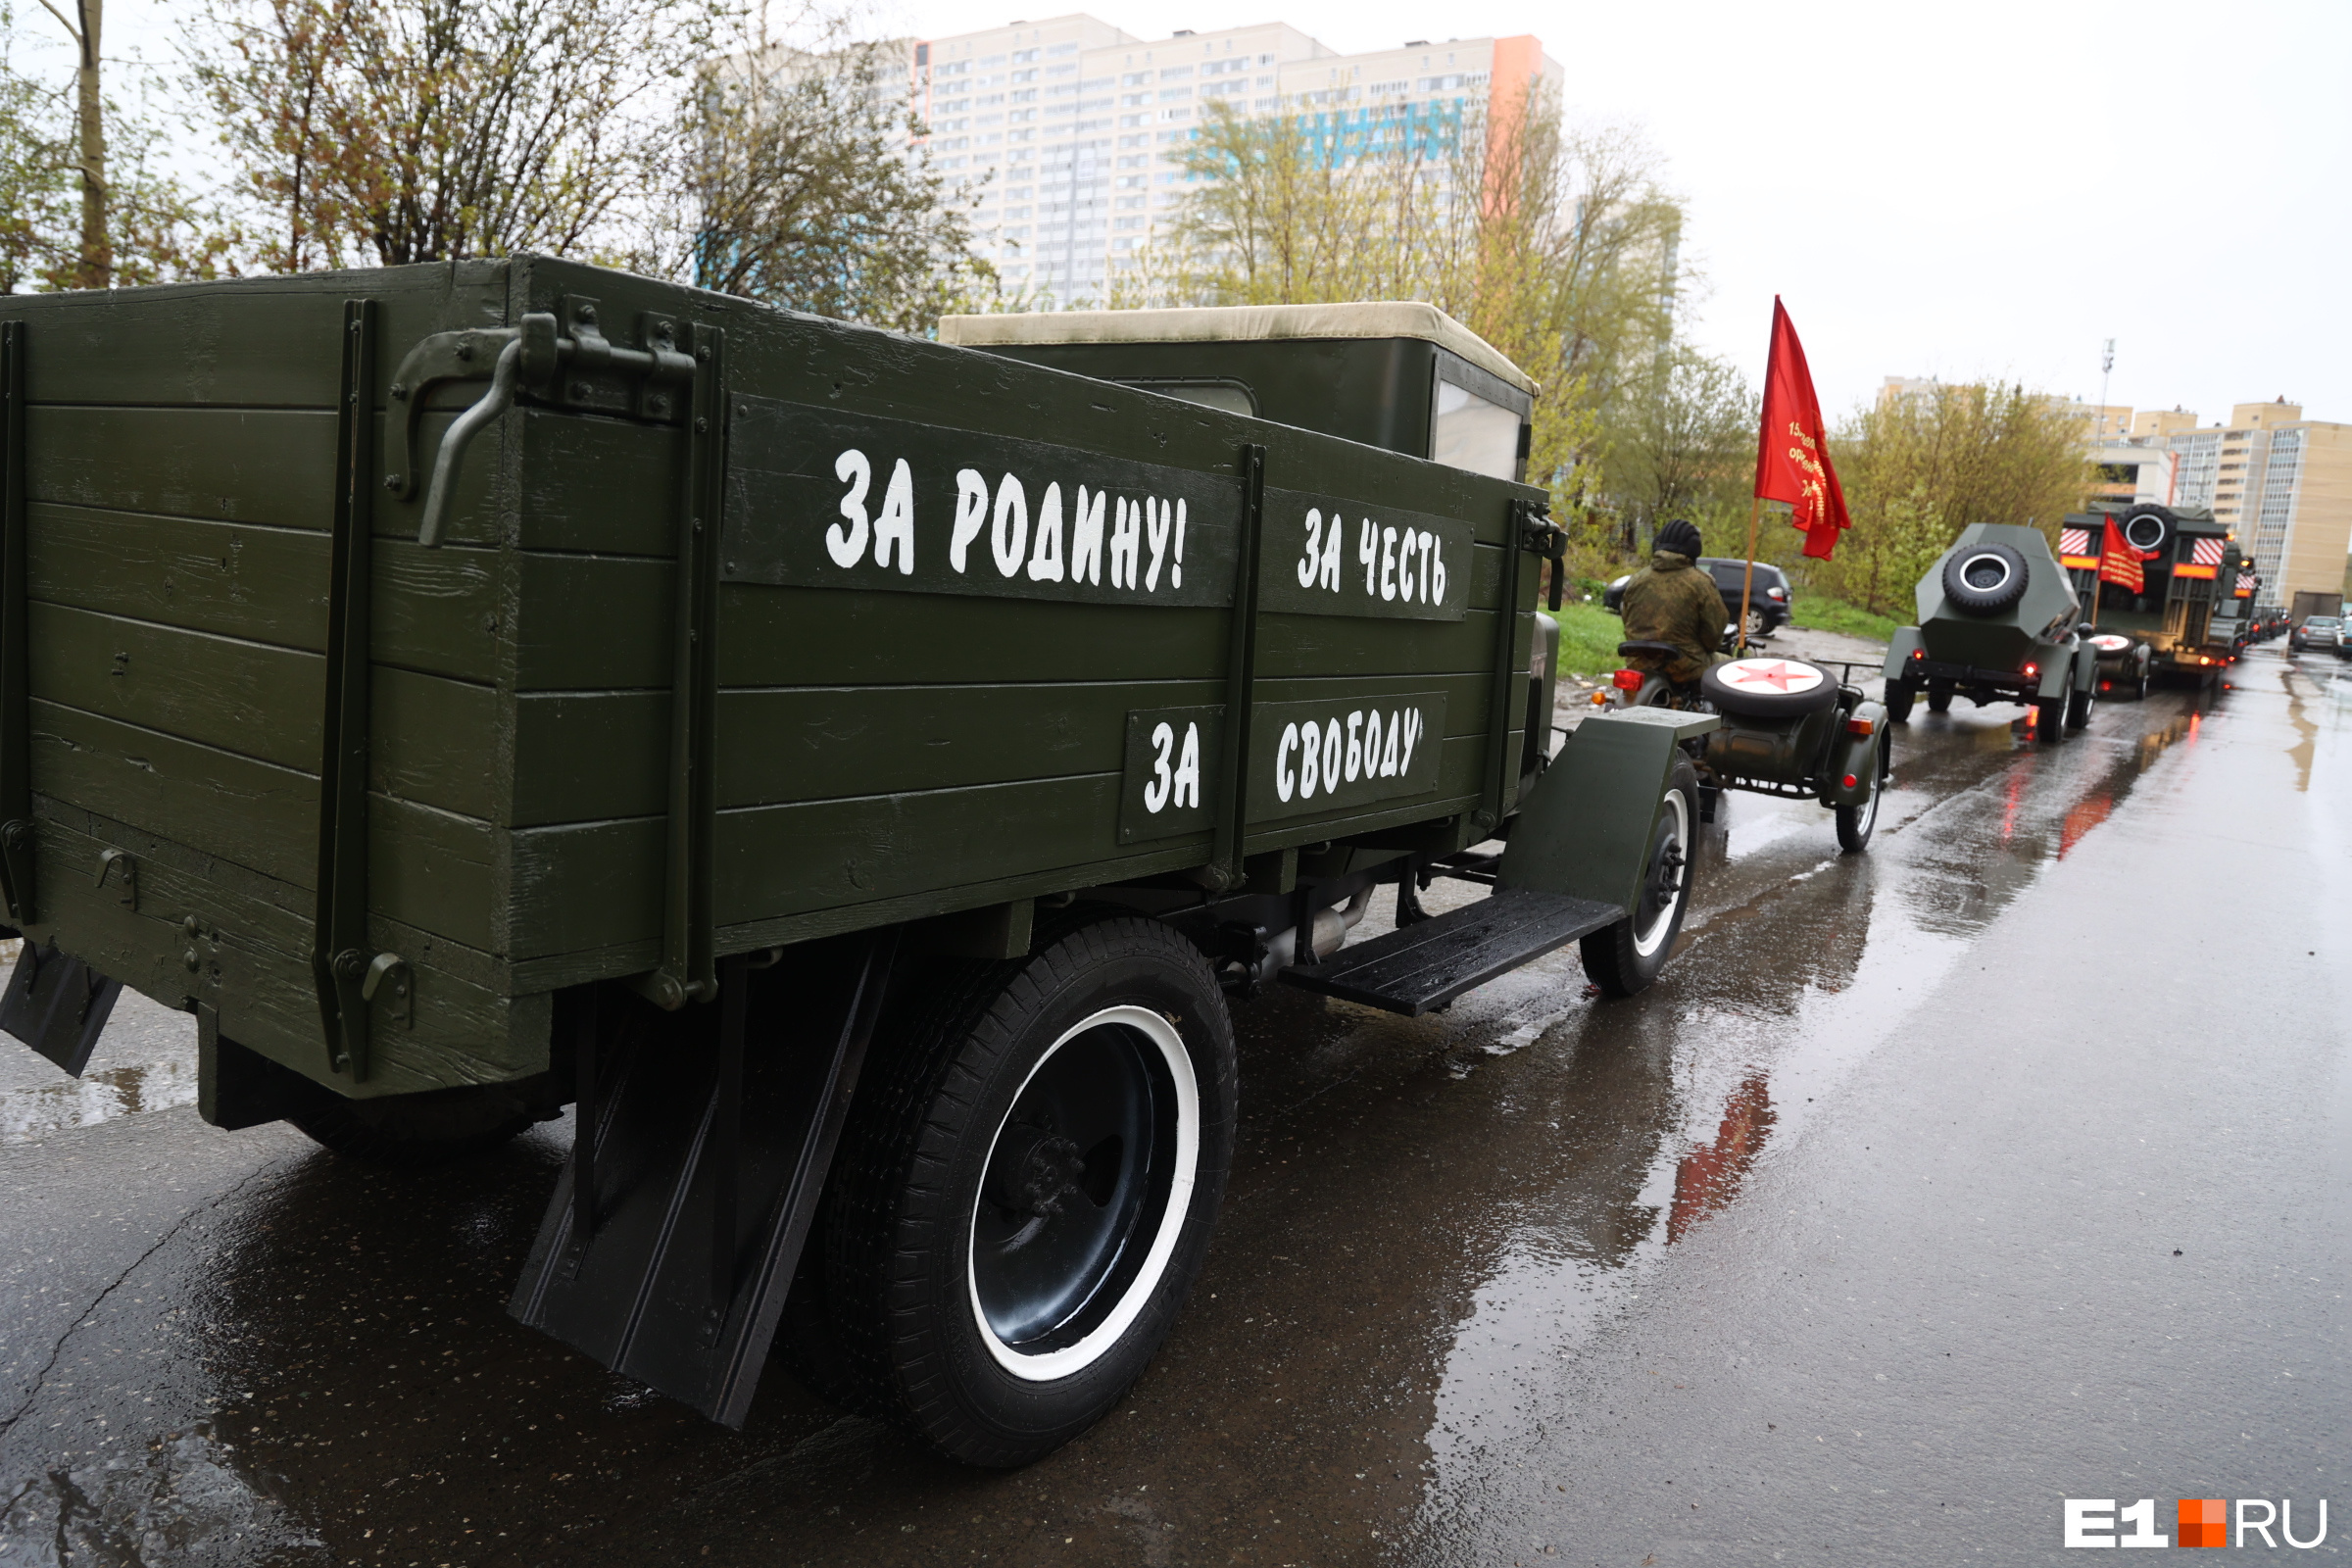 Центр перекрыт, идет военная техника: онлайн-репортаж о Дне Победы в Екатеринбурге